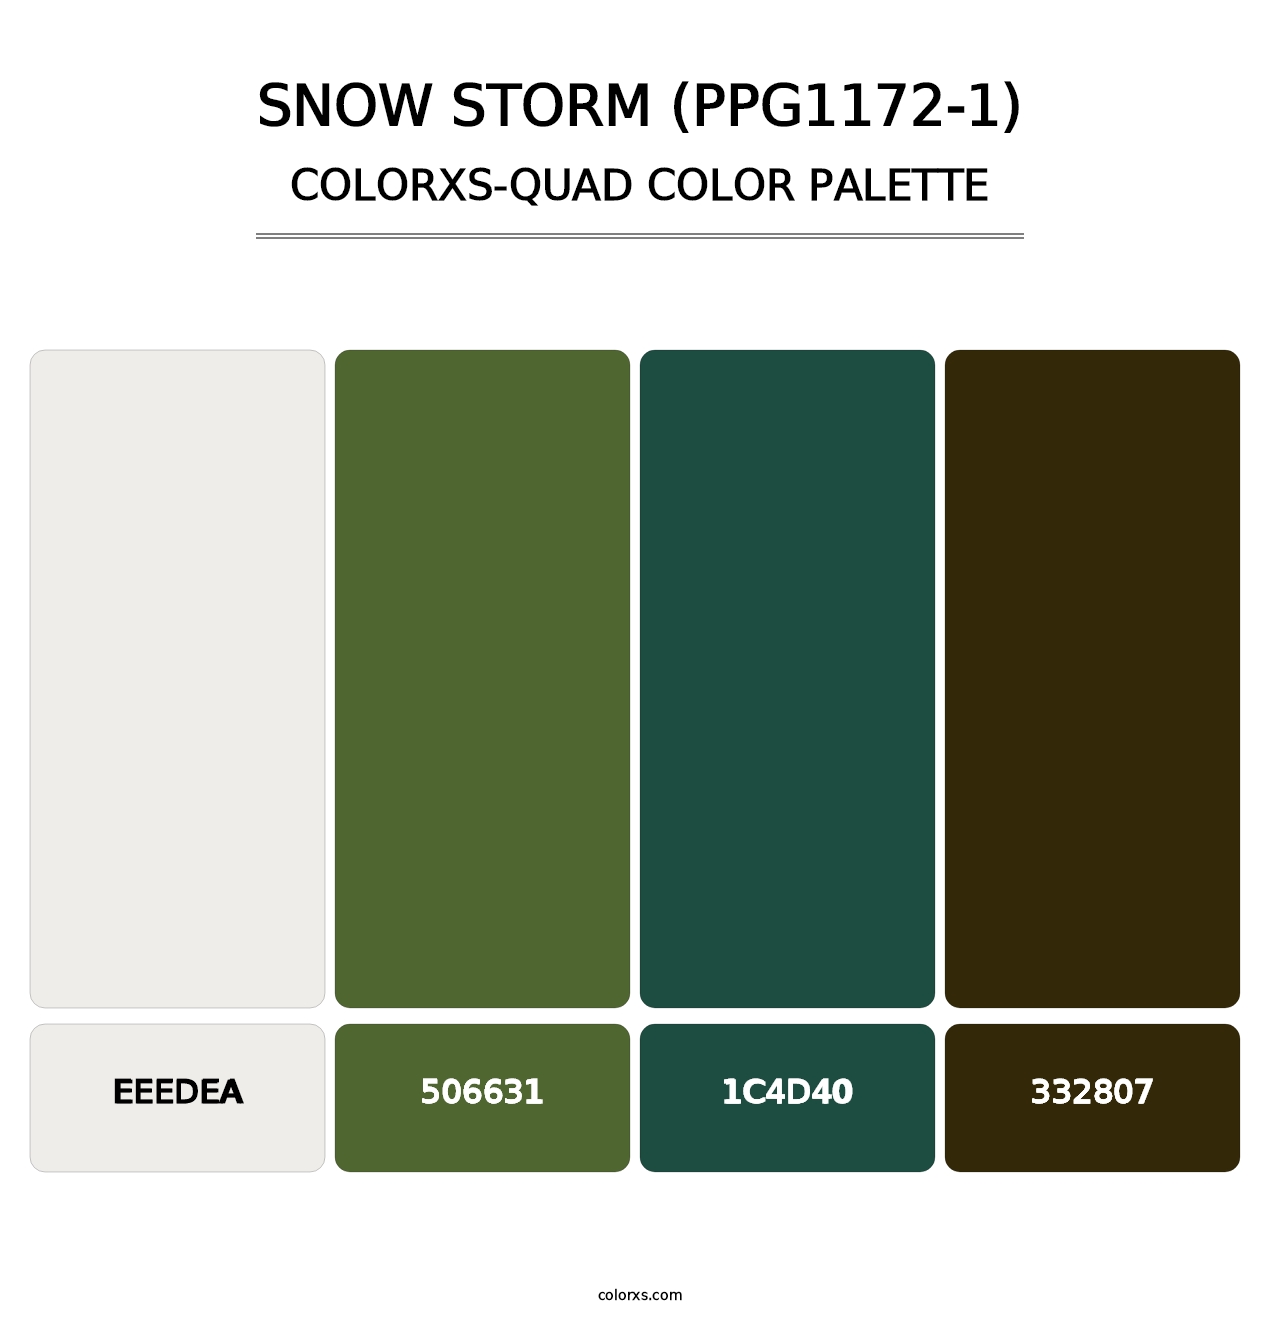 Snow Storm (PPG1172-1) - Colorxs Quad Palette